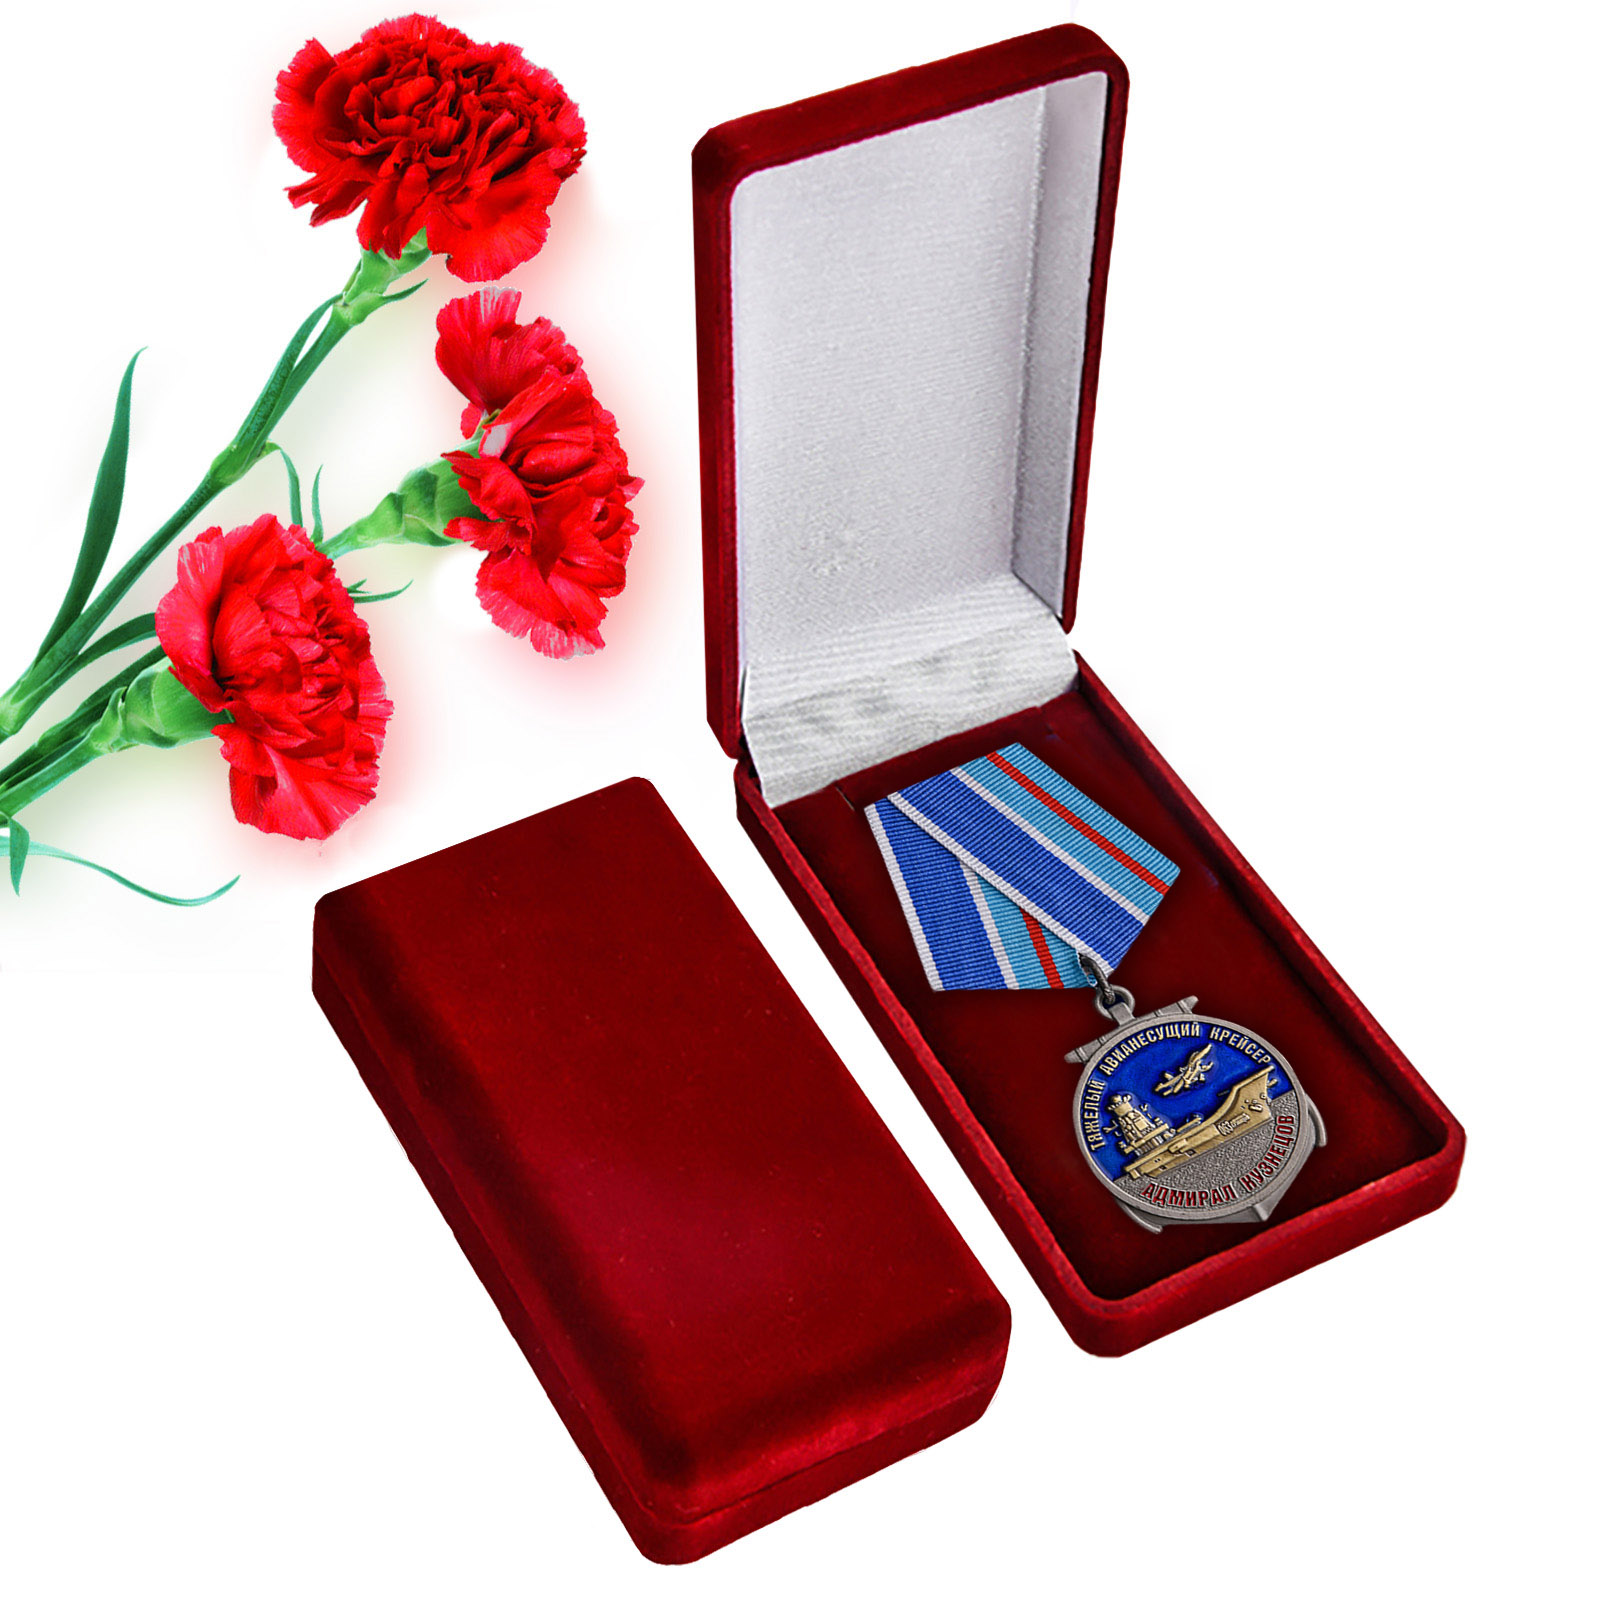 Купить памятную медаль Крейсер Адмирал Кузнецов с доставкой в ваш город